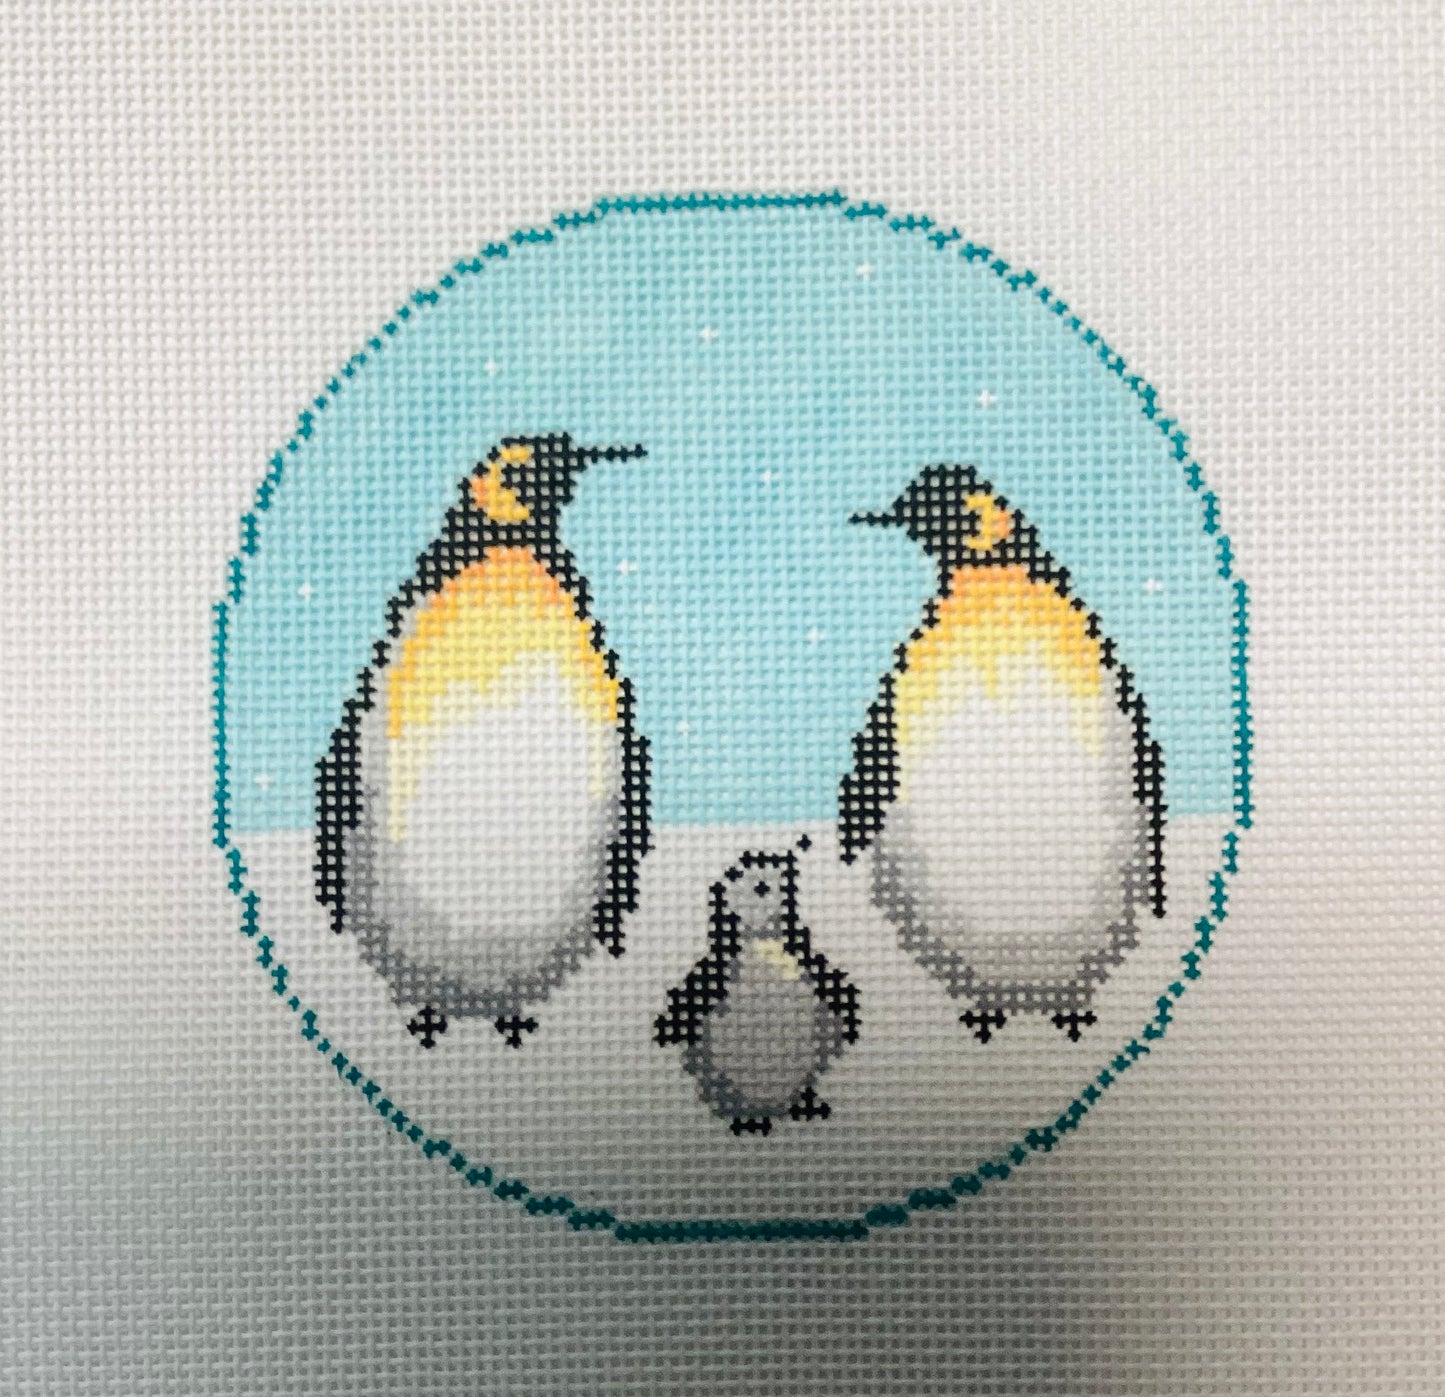 Penguin Family Needlepoint